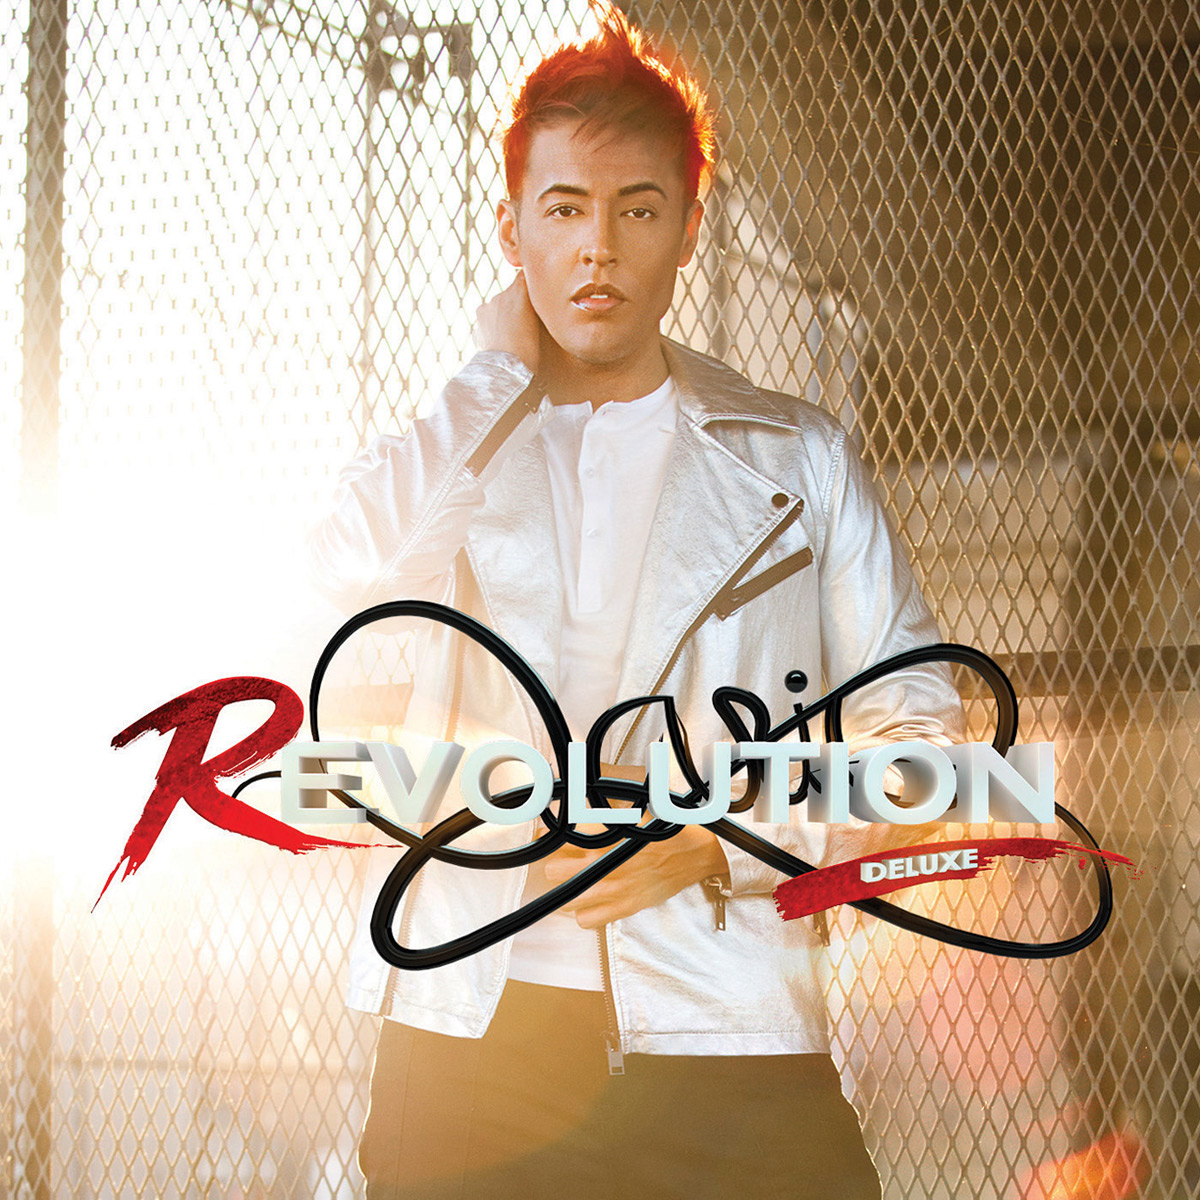 Get Dario's album: Revolution